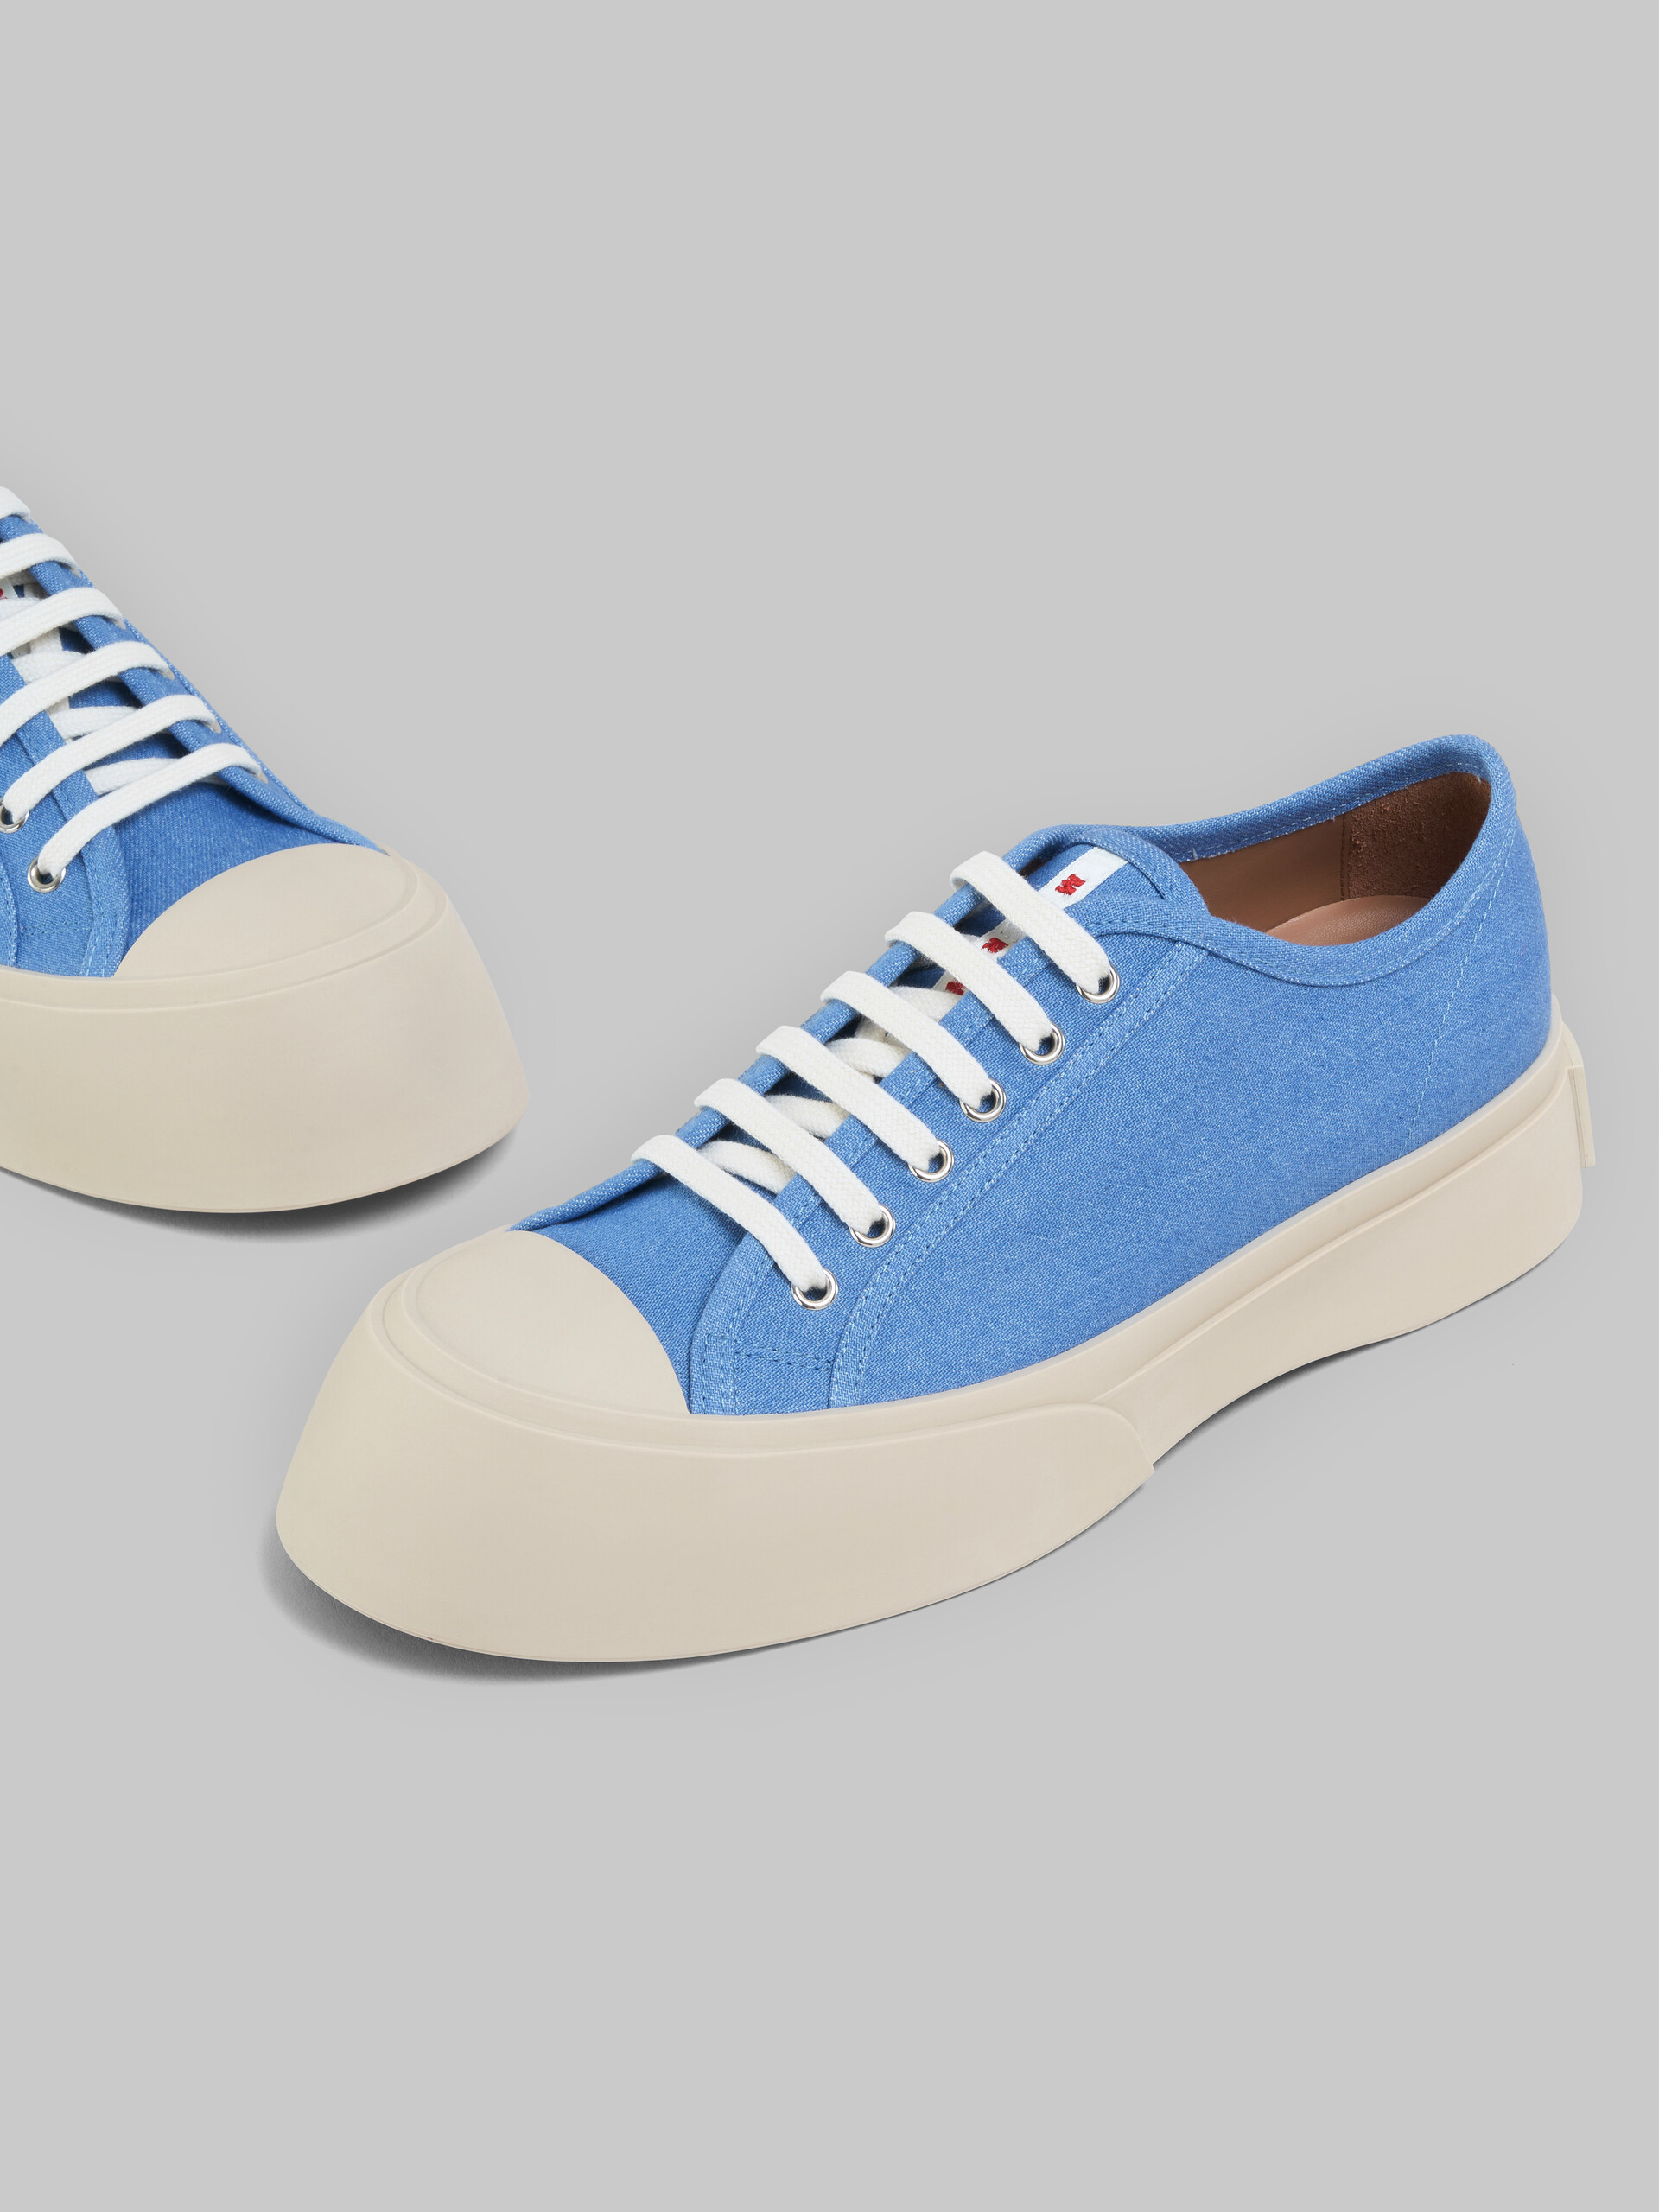 Sneakers à lacets Pablo en denim bleu clair - Sneakers - Image 5